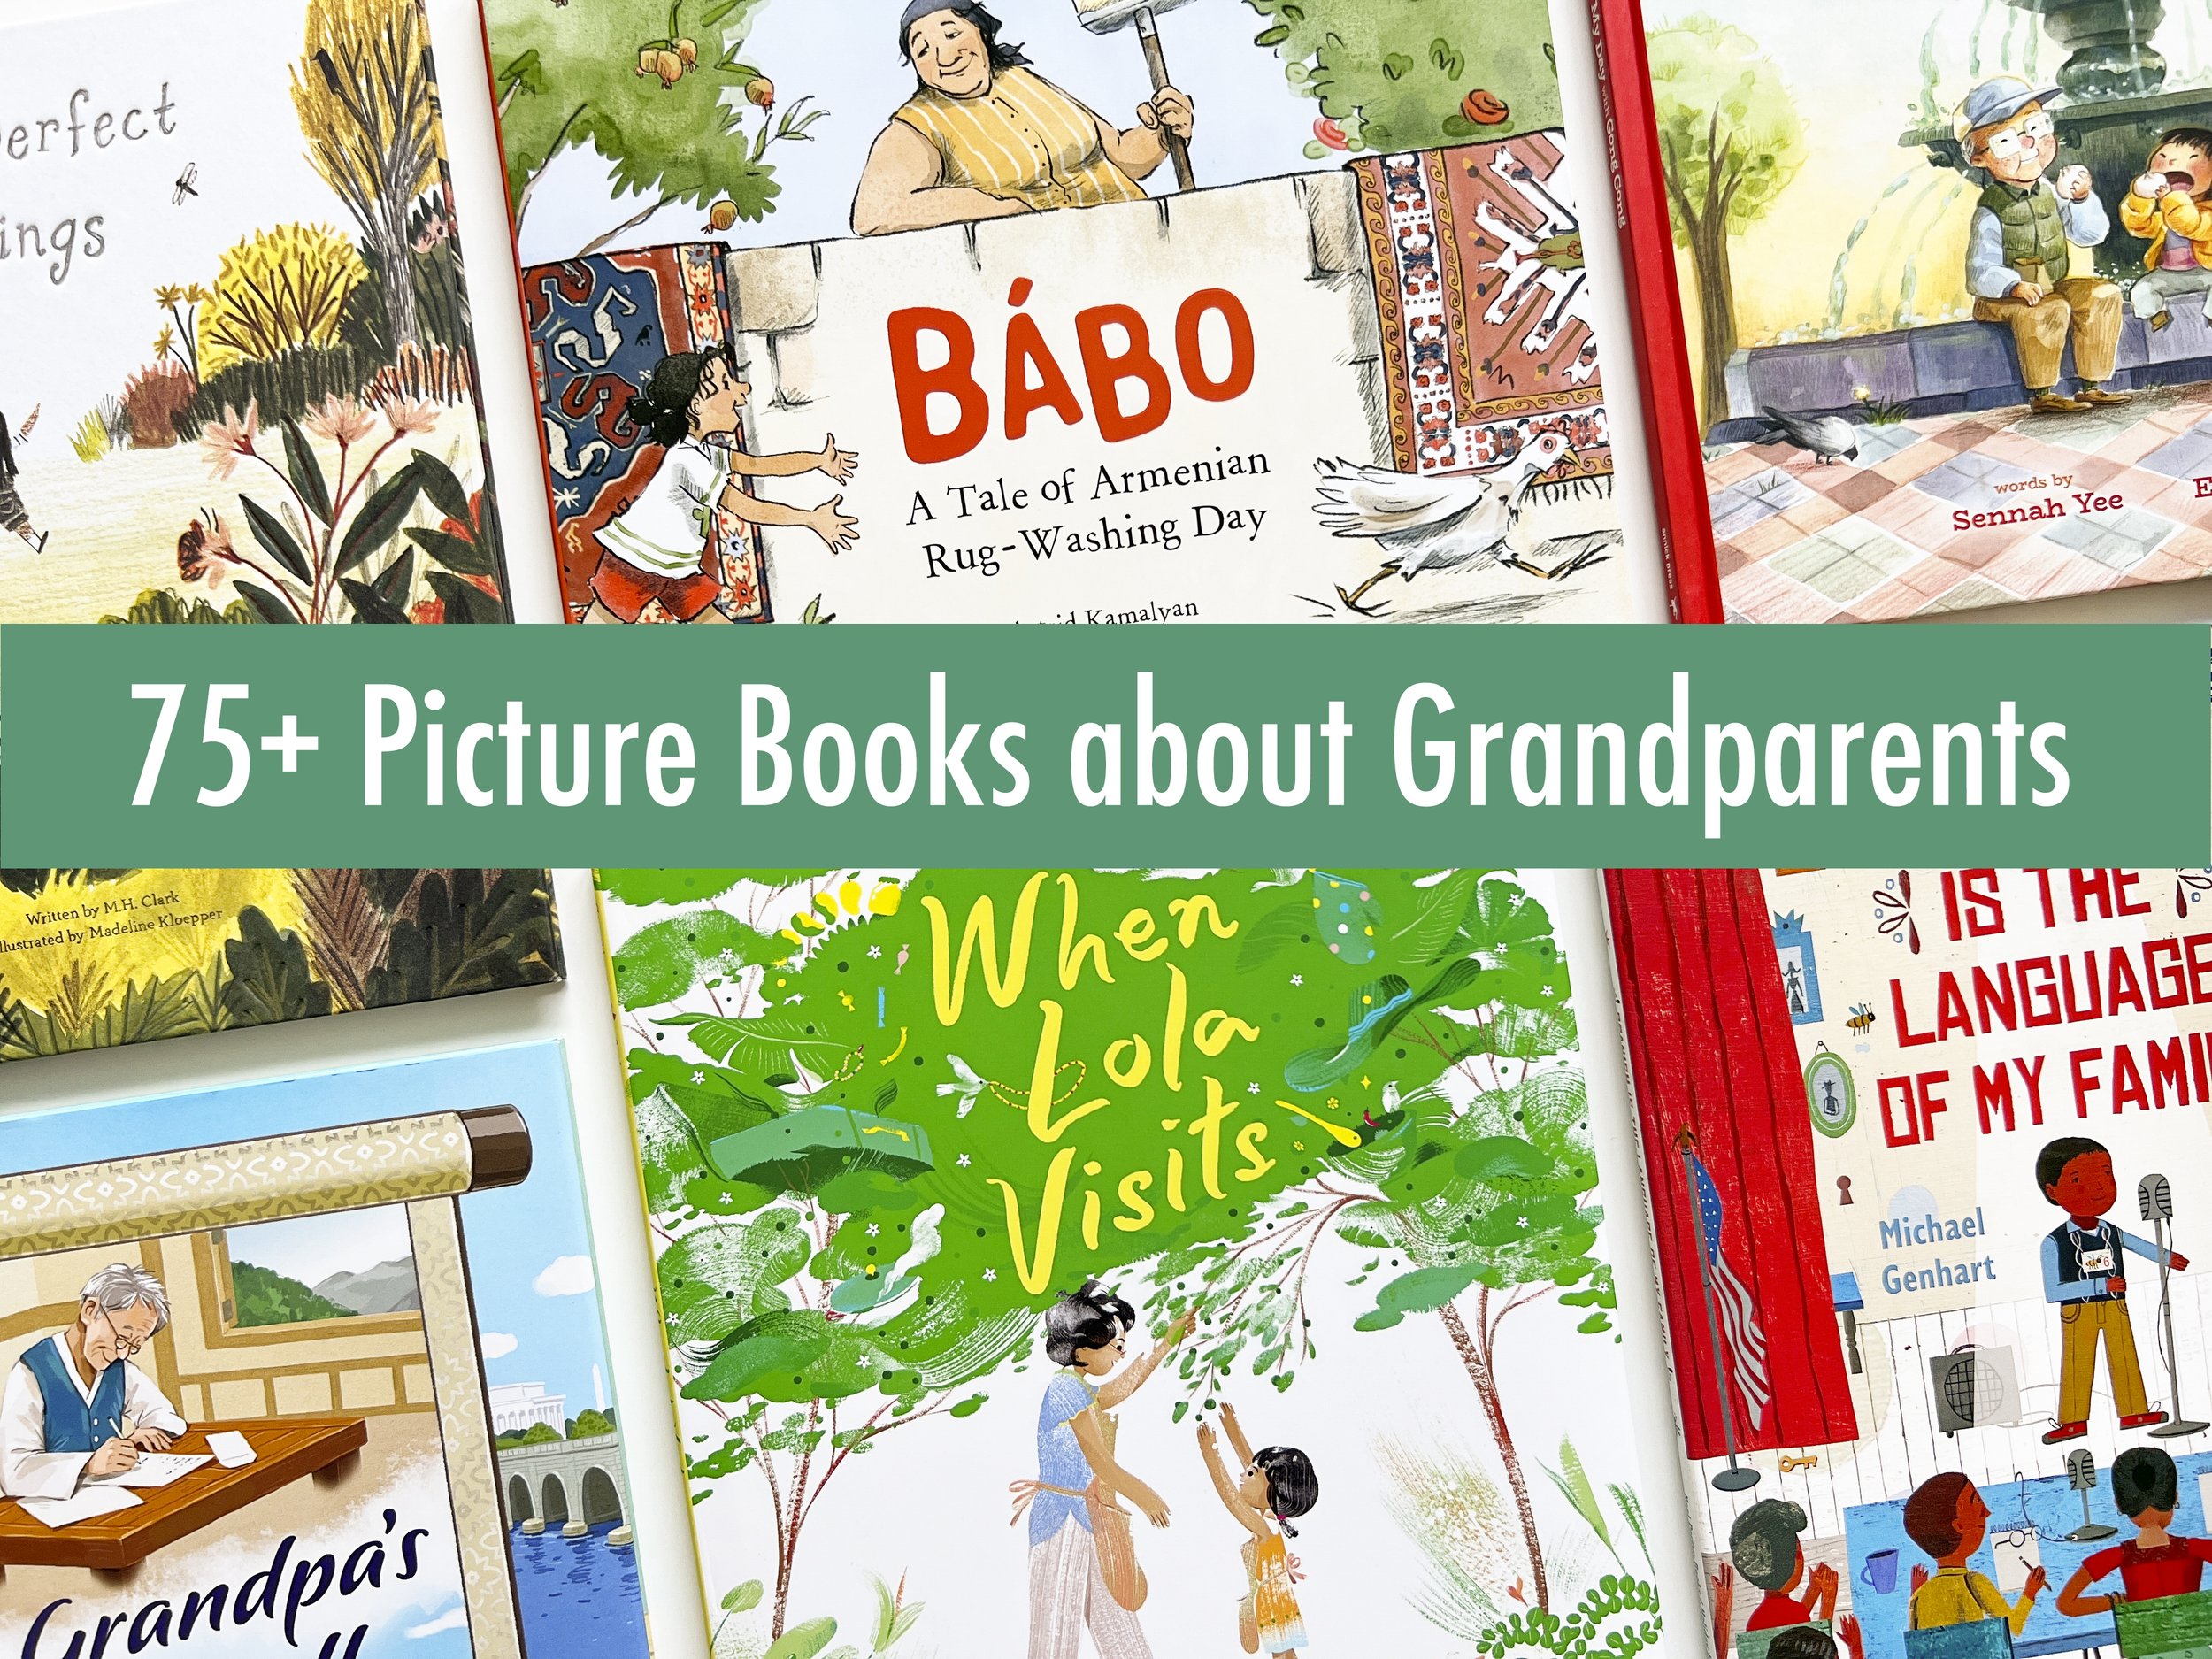 Top 10 Secrets of Granny 3 Part 3, Top 10 Secrets of Granny and Grandpa